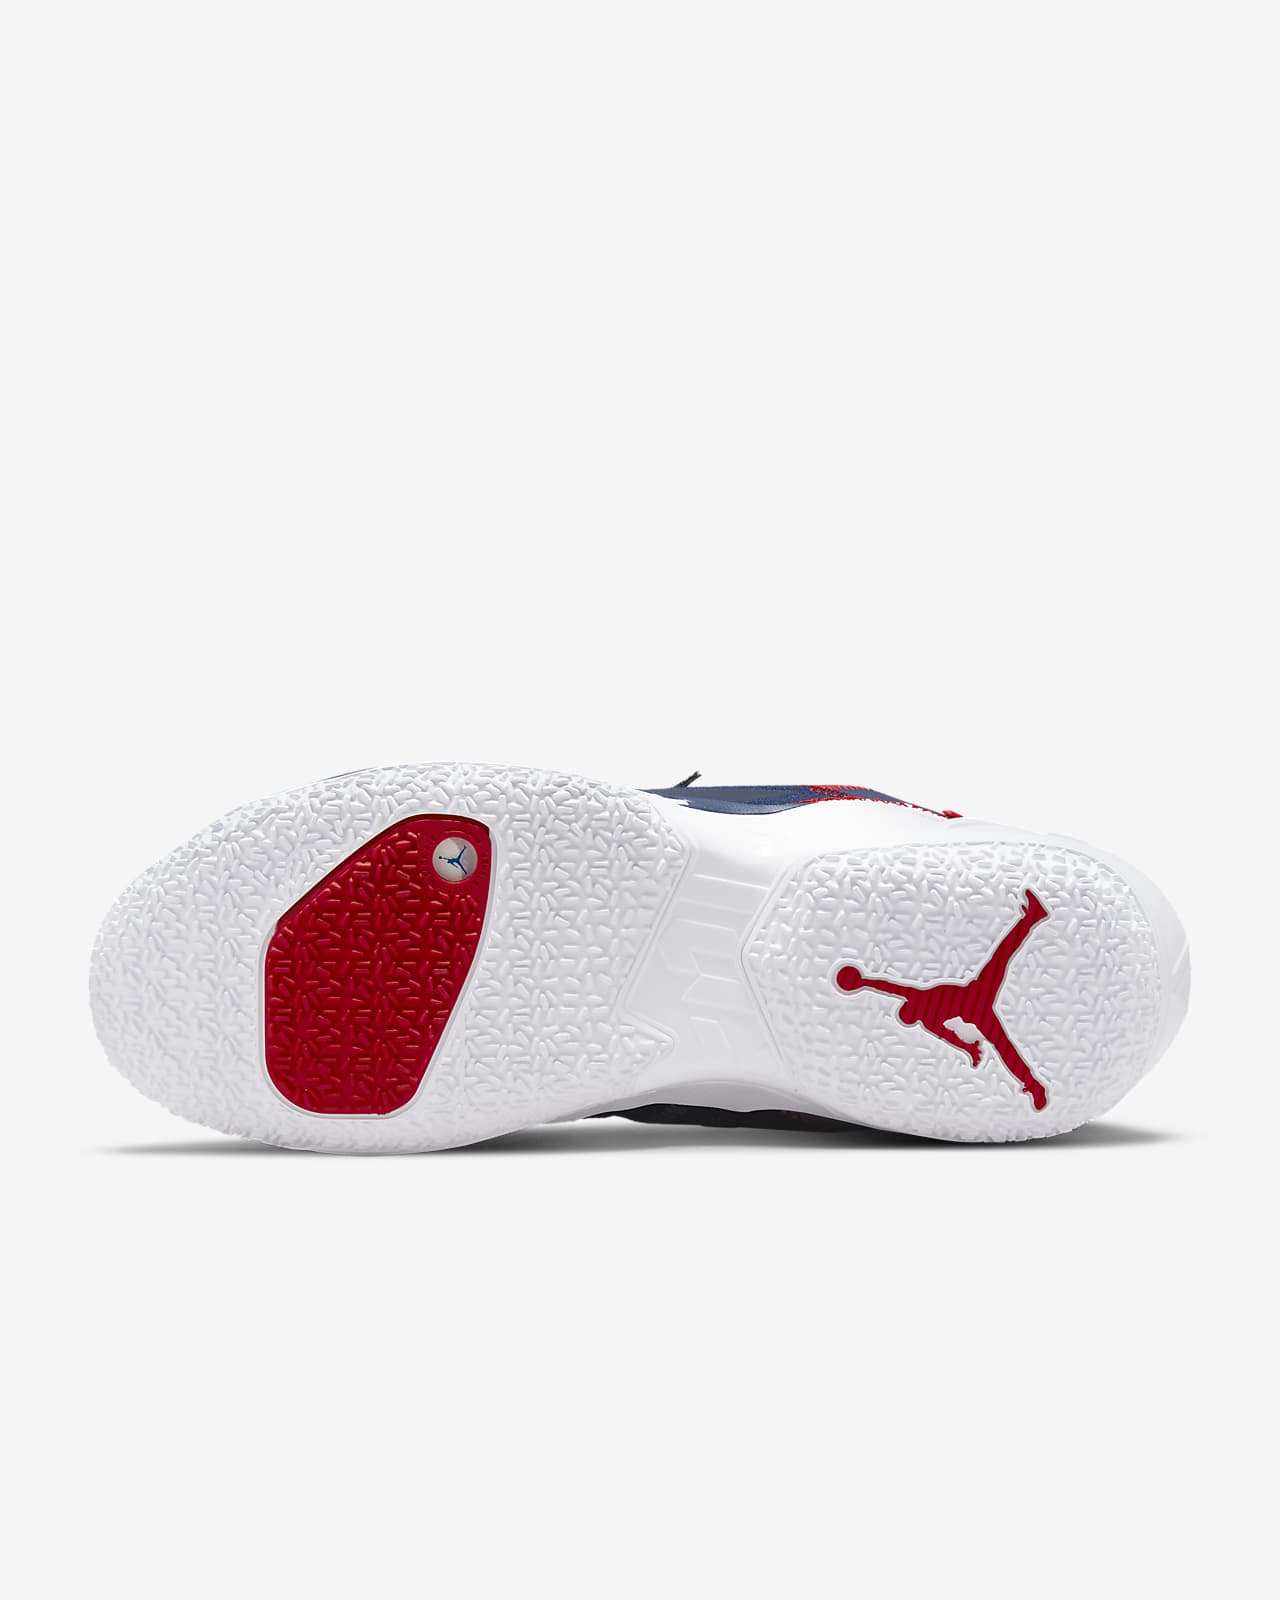 Posicionar propietario carga Jordan 'Why Not?' Zer0.4 Zapatillas de baloncesto. Nike ES